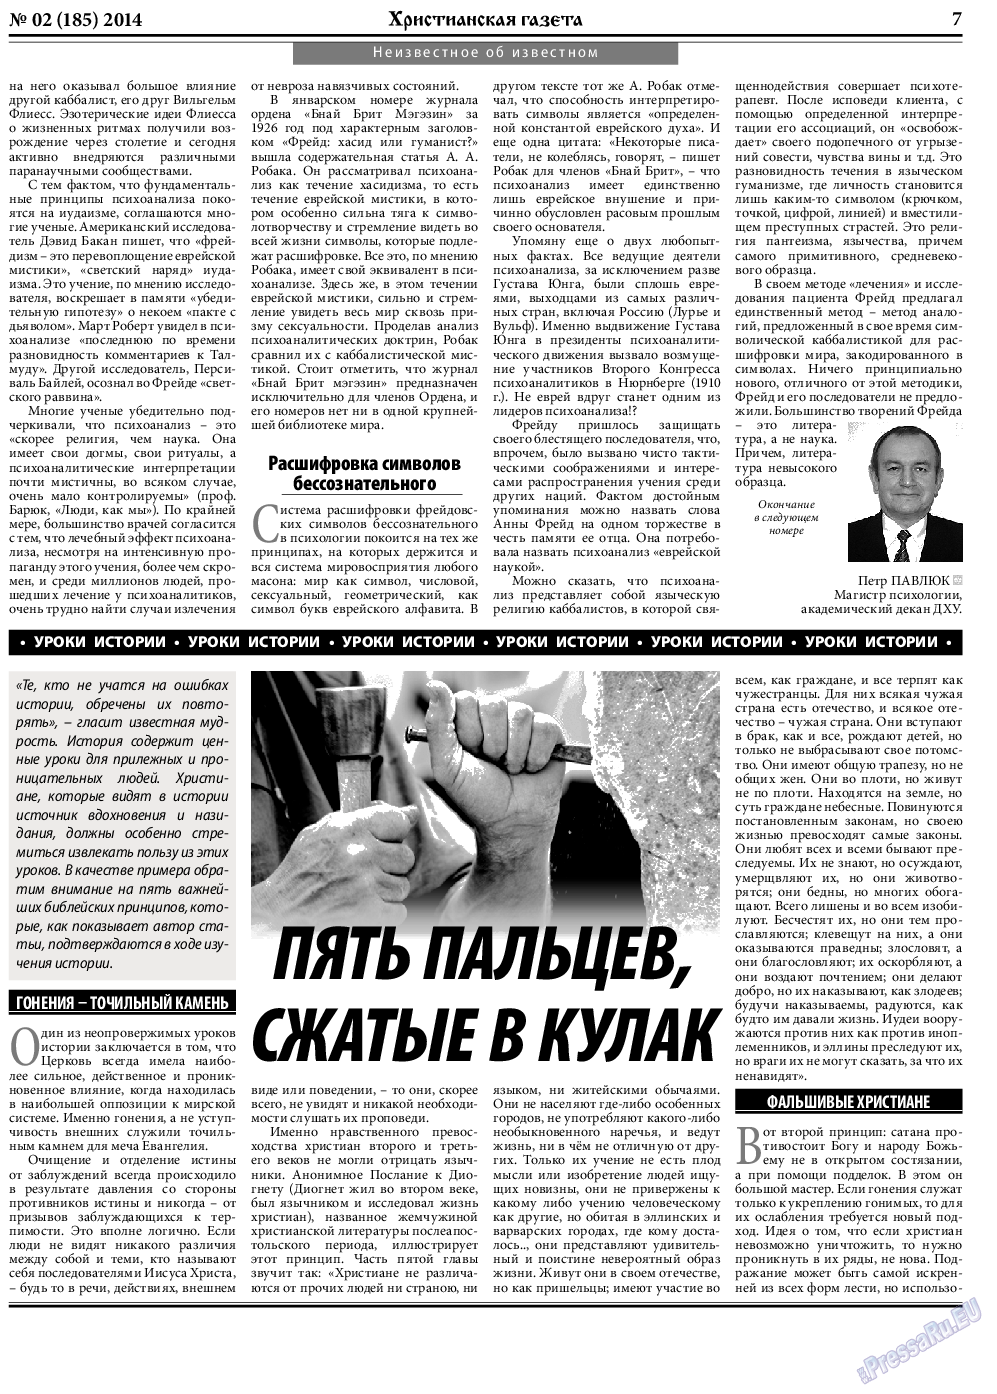 Христианская газета, газета. 2014 №2 стр.7